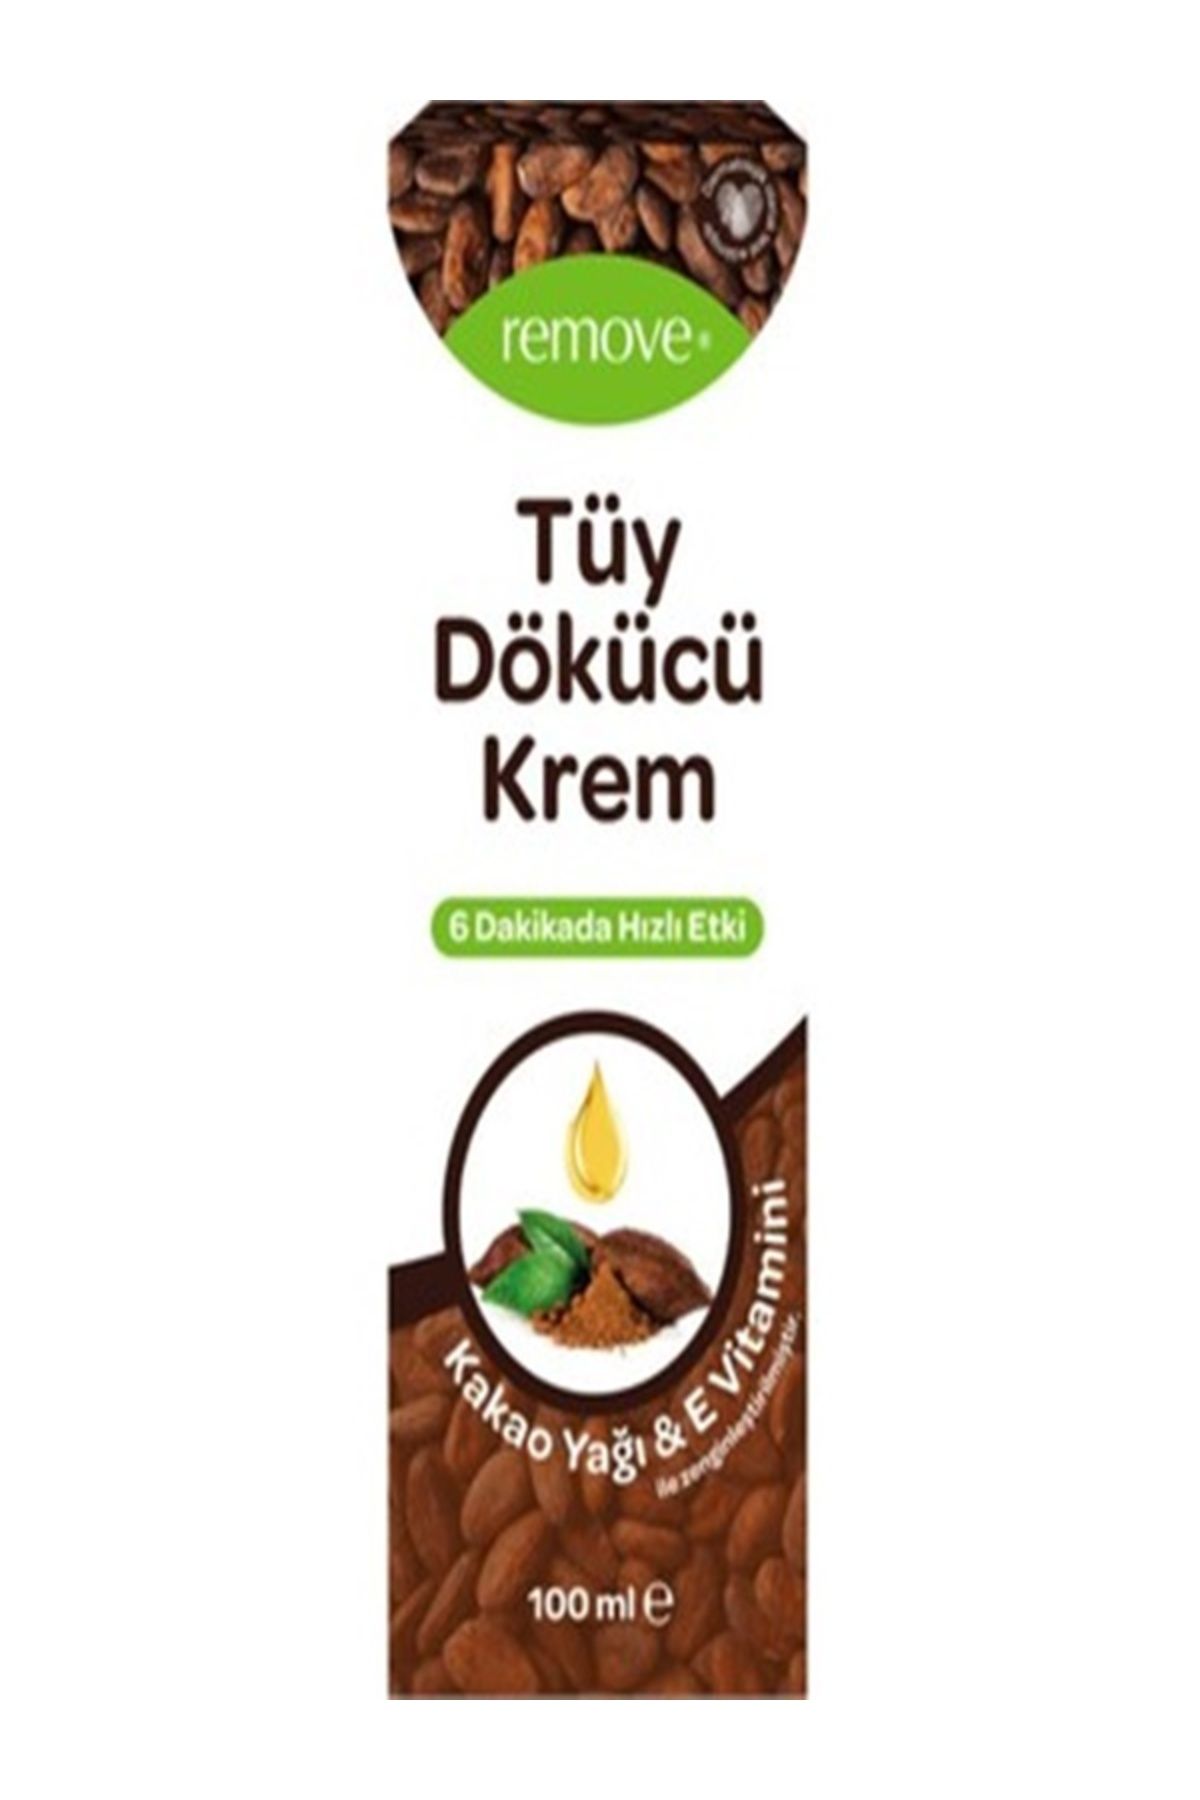 remove Tüy Dökücü Krem, Kakao Yağı & E Vitamini İle Zenginleştirilmiş 100 ml